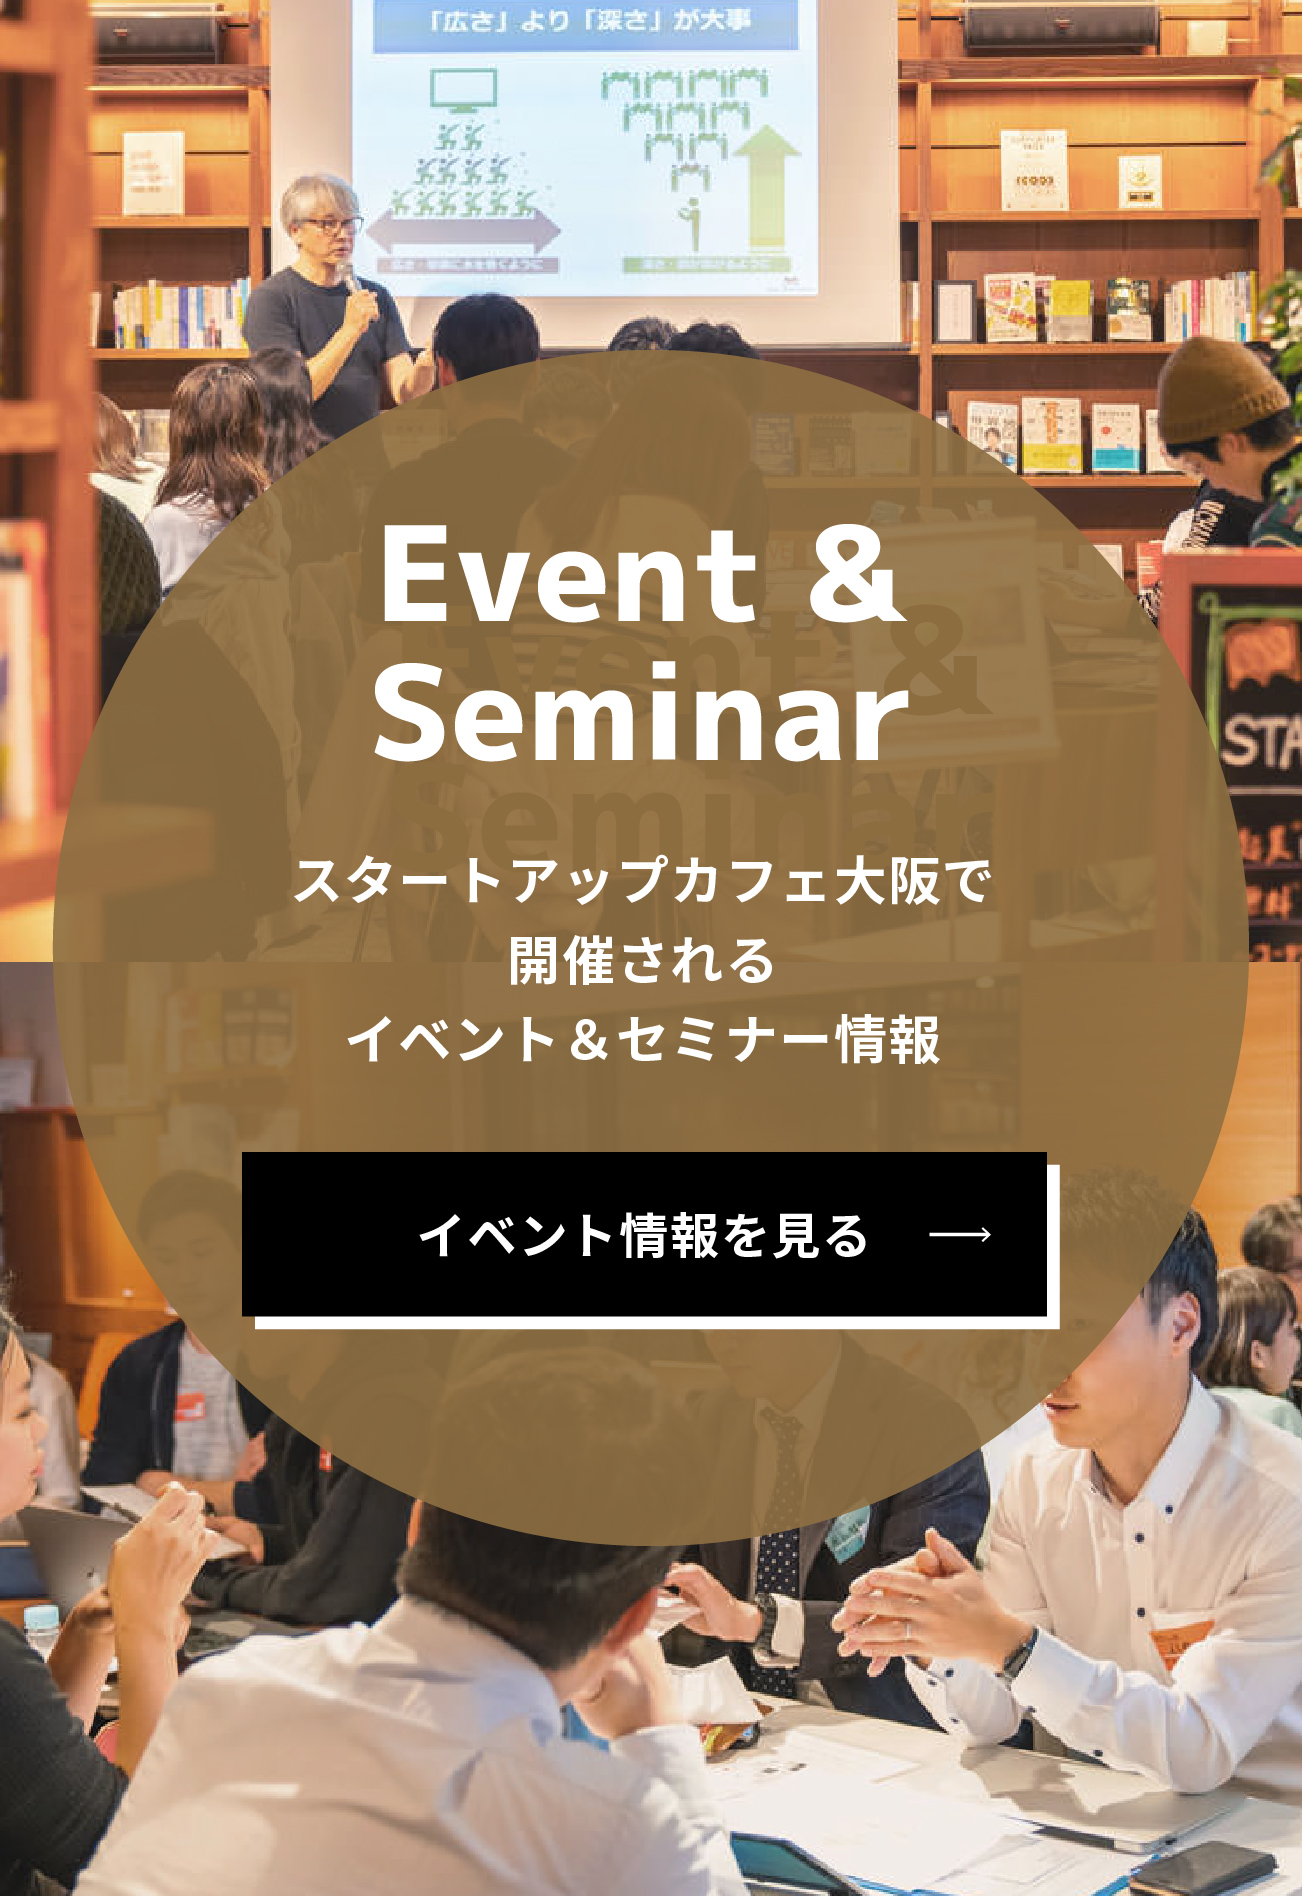 スタートアップカフェ大阪のイベント情報を見る